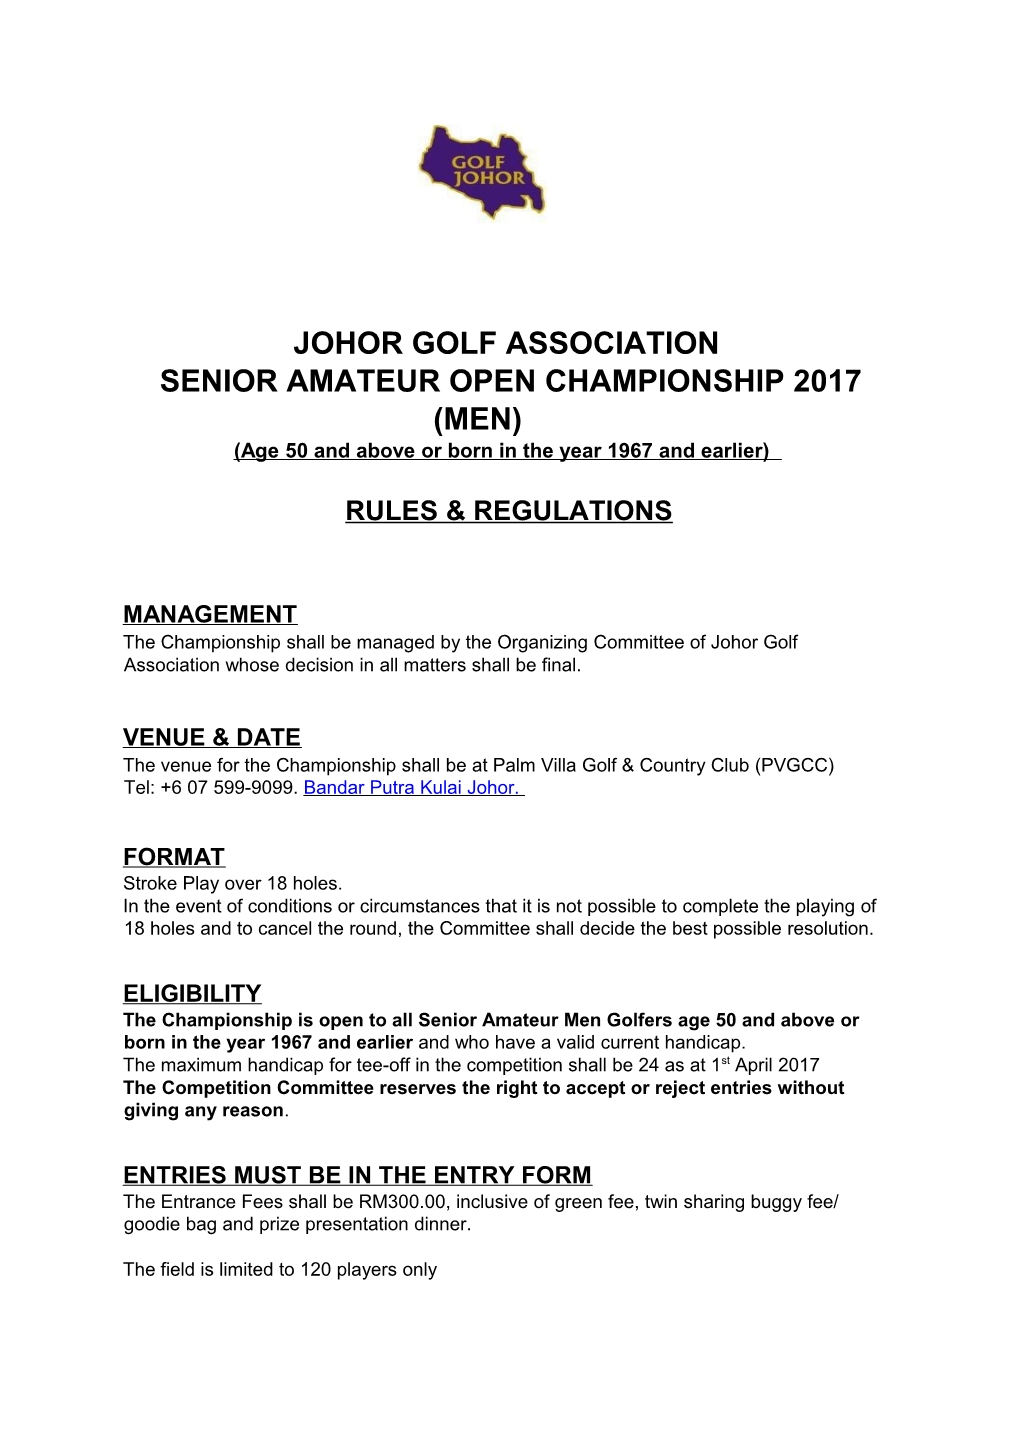 Senior Amateur Open Championship 2017